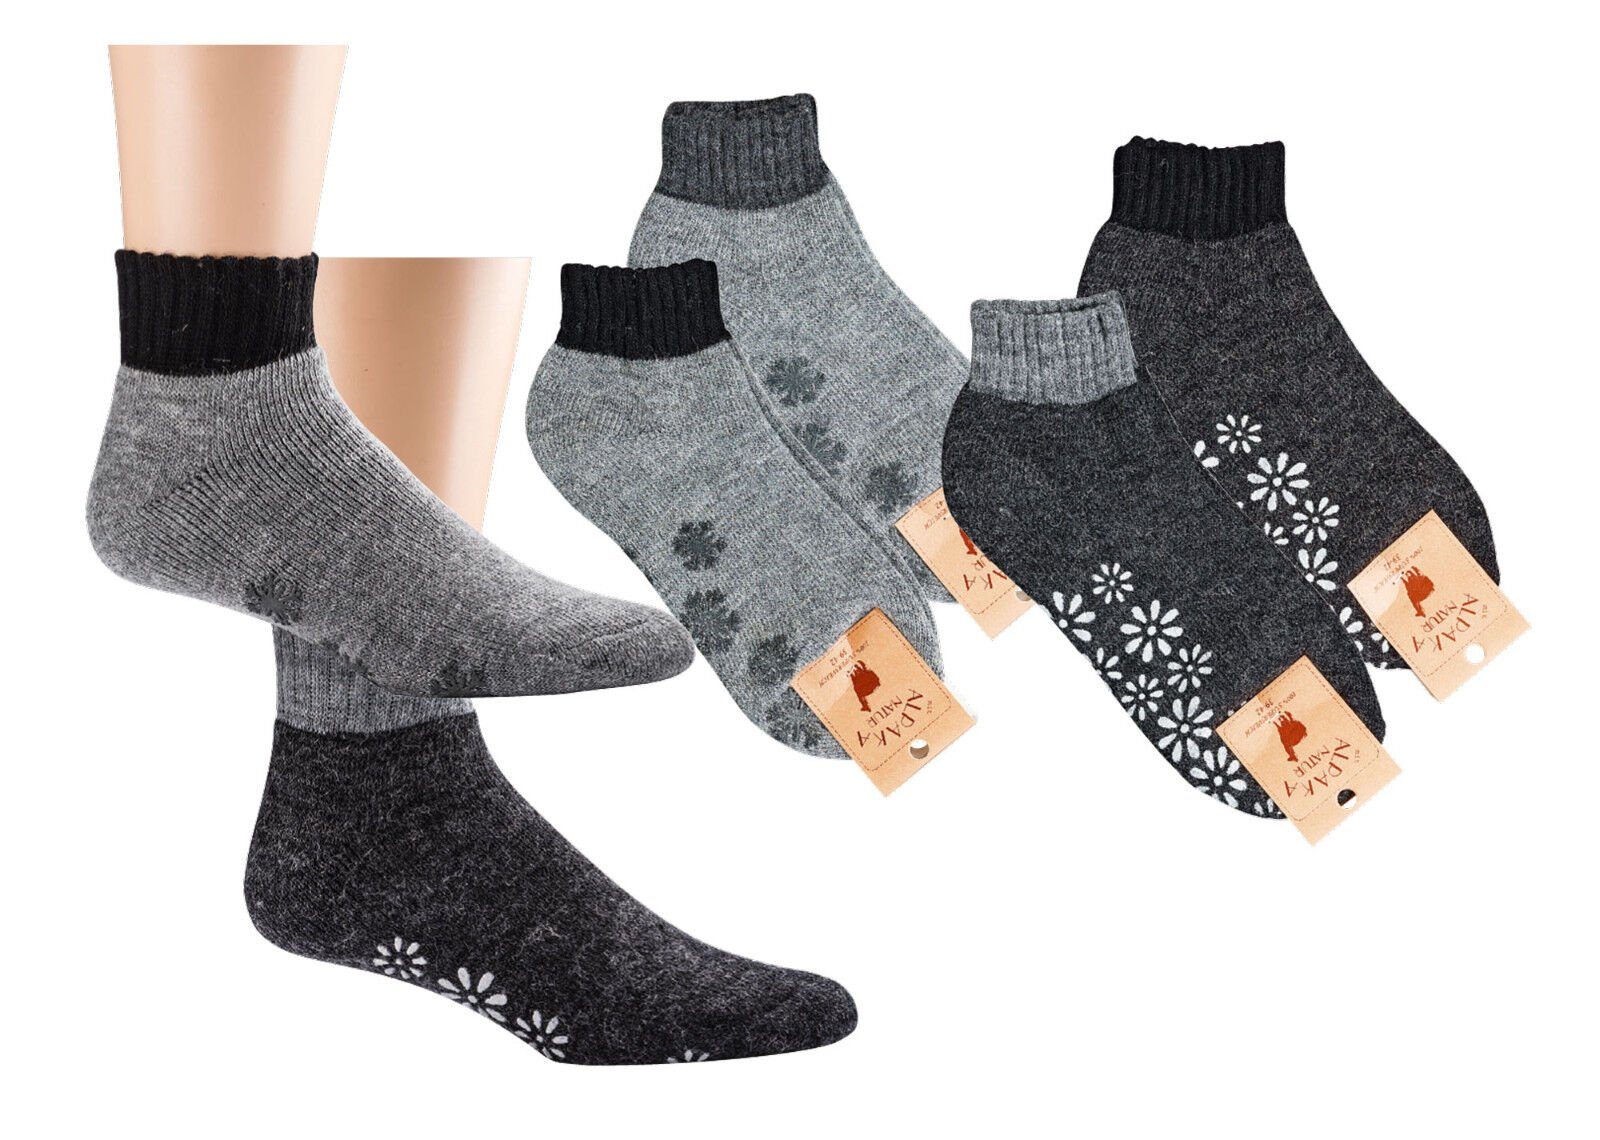 Wowerat ABS-Socken Kurz Socken mit Alpaka Wolle und schönen ABS Blumen Eiskristallen (2 Paar) Innenfrottee anthrazit